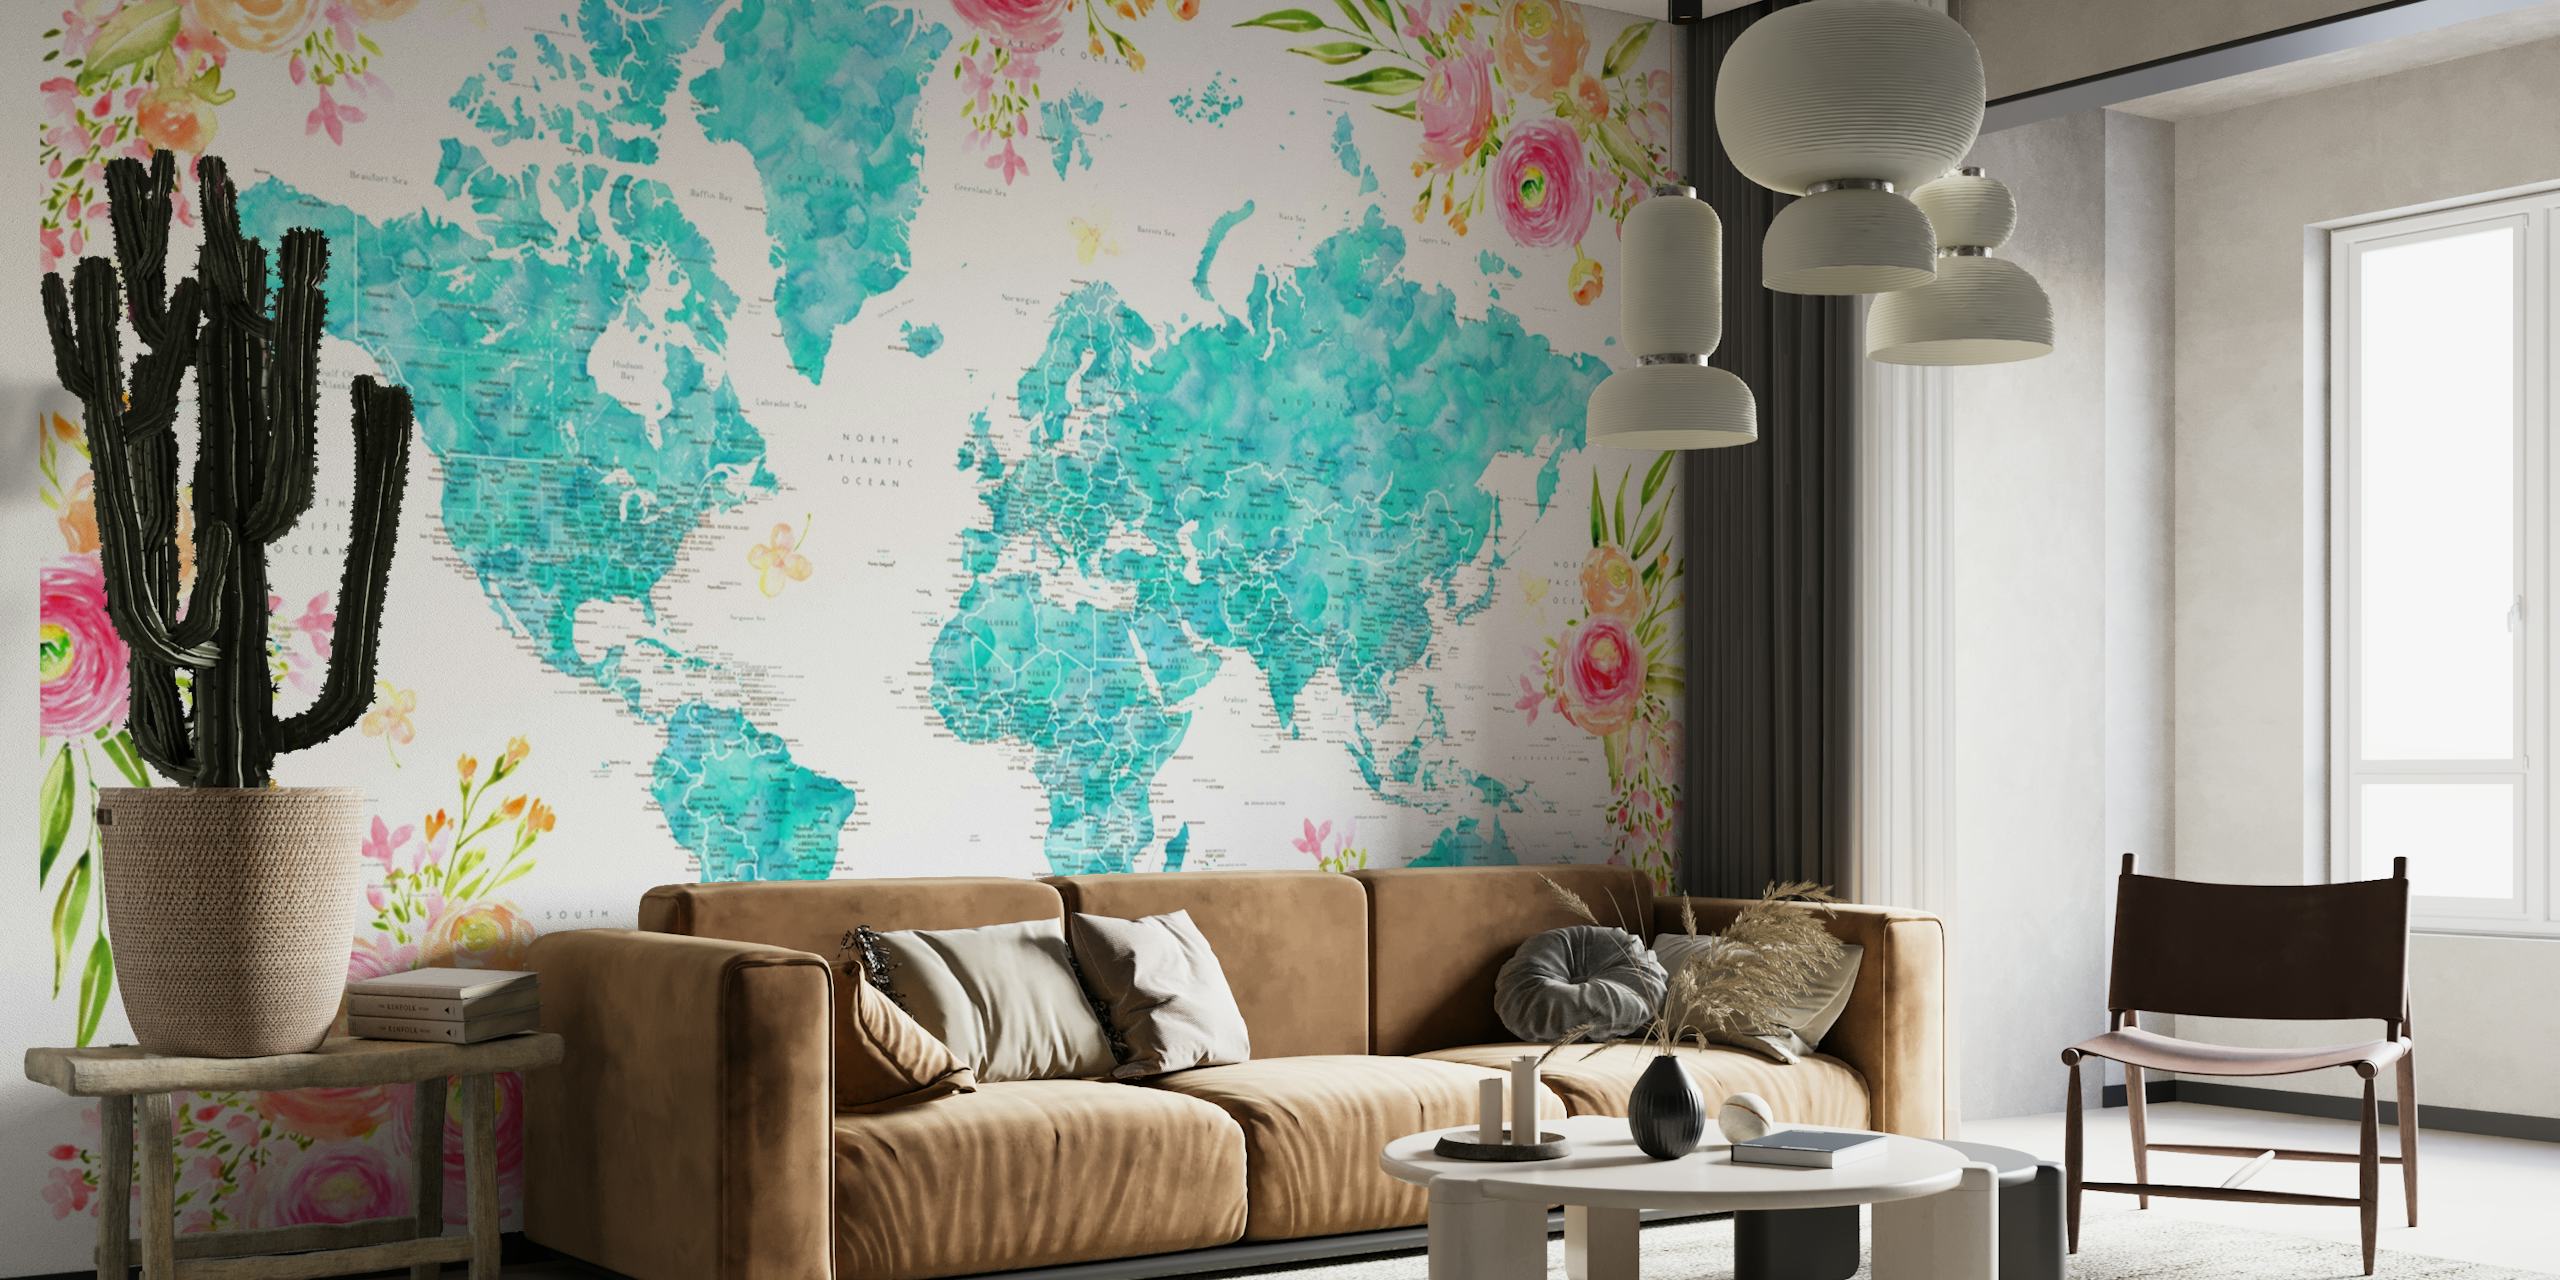 Carte du monde détaillée avec des bordures florales dans des tons turquoise et pastel sur une fresque murale.